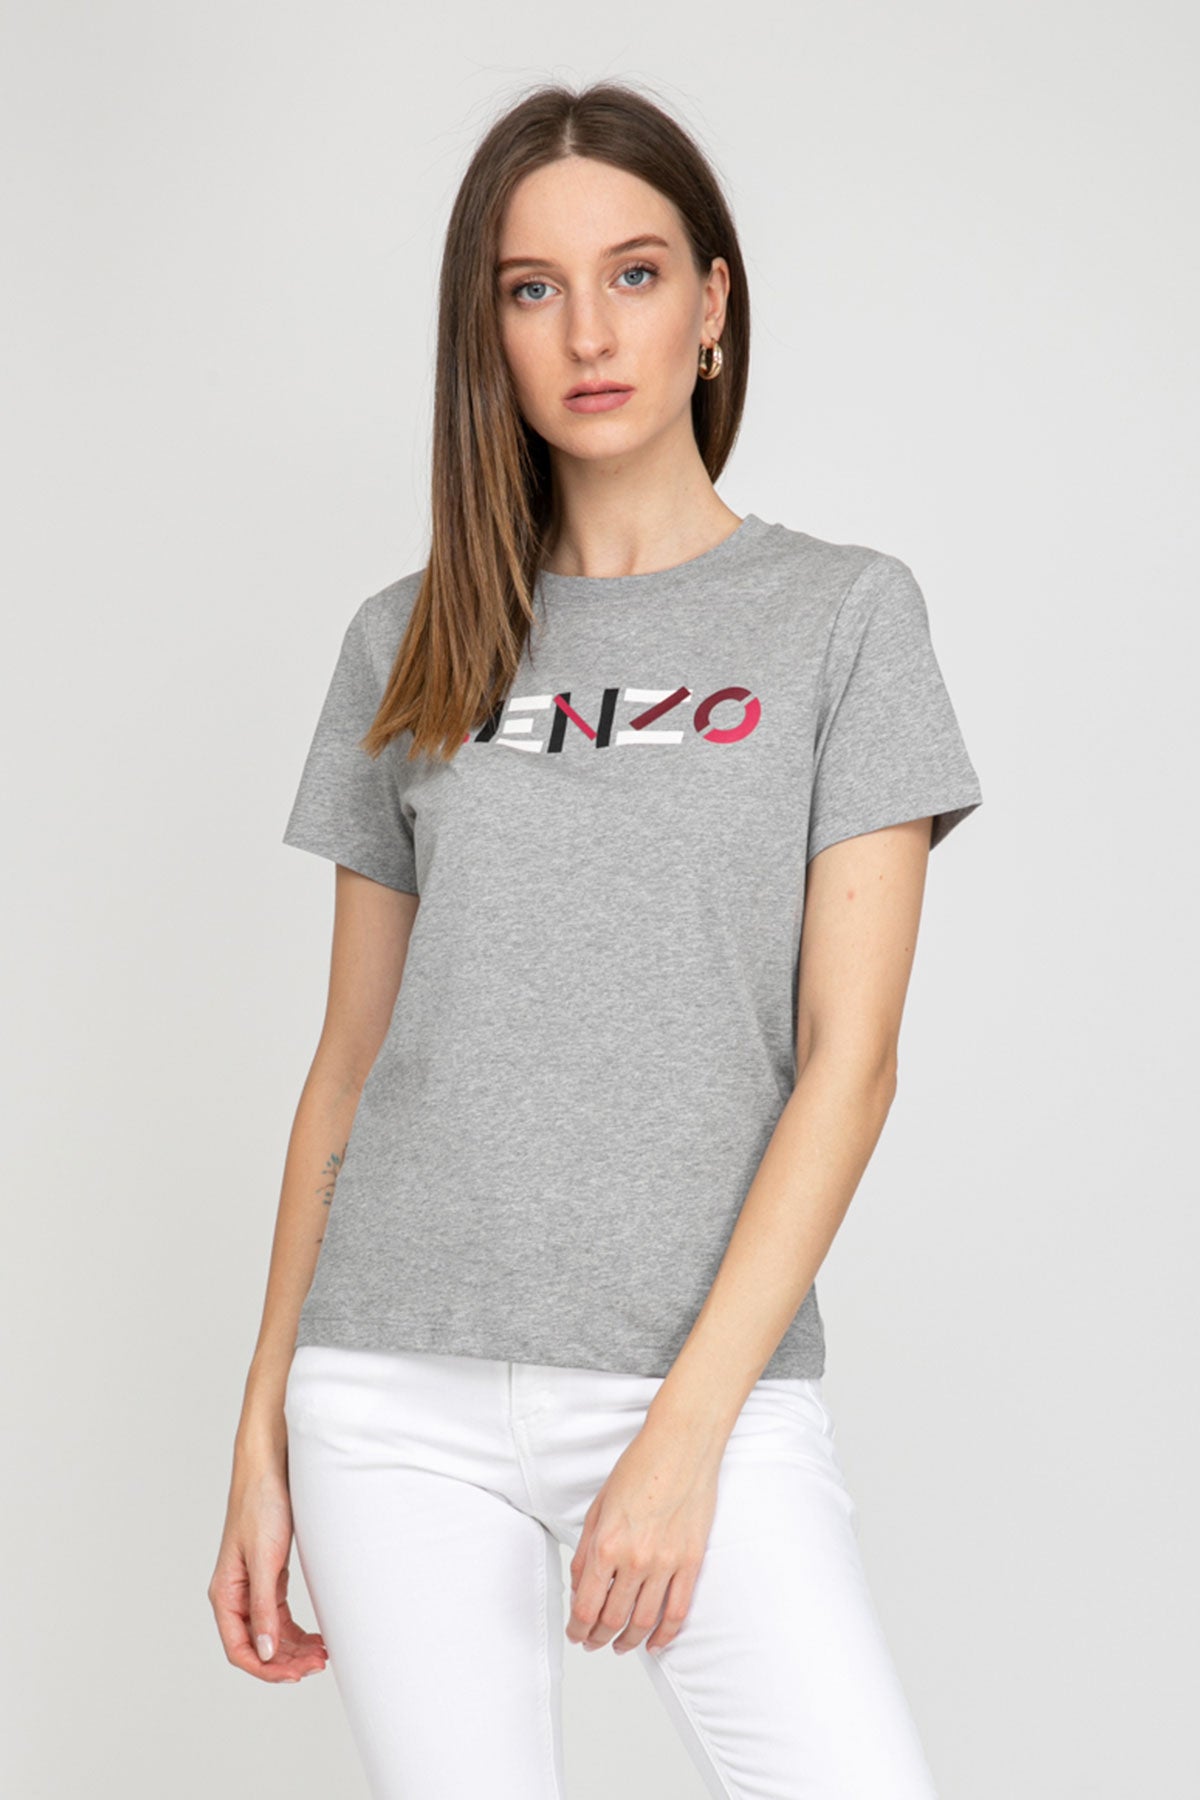 Kenzo Classic Fit Logo T-shirt-Libas Trendy Fashion Store